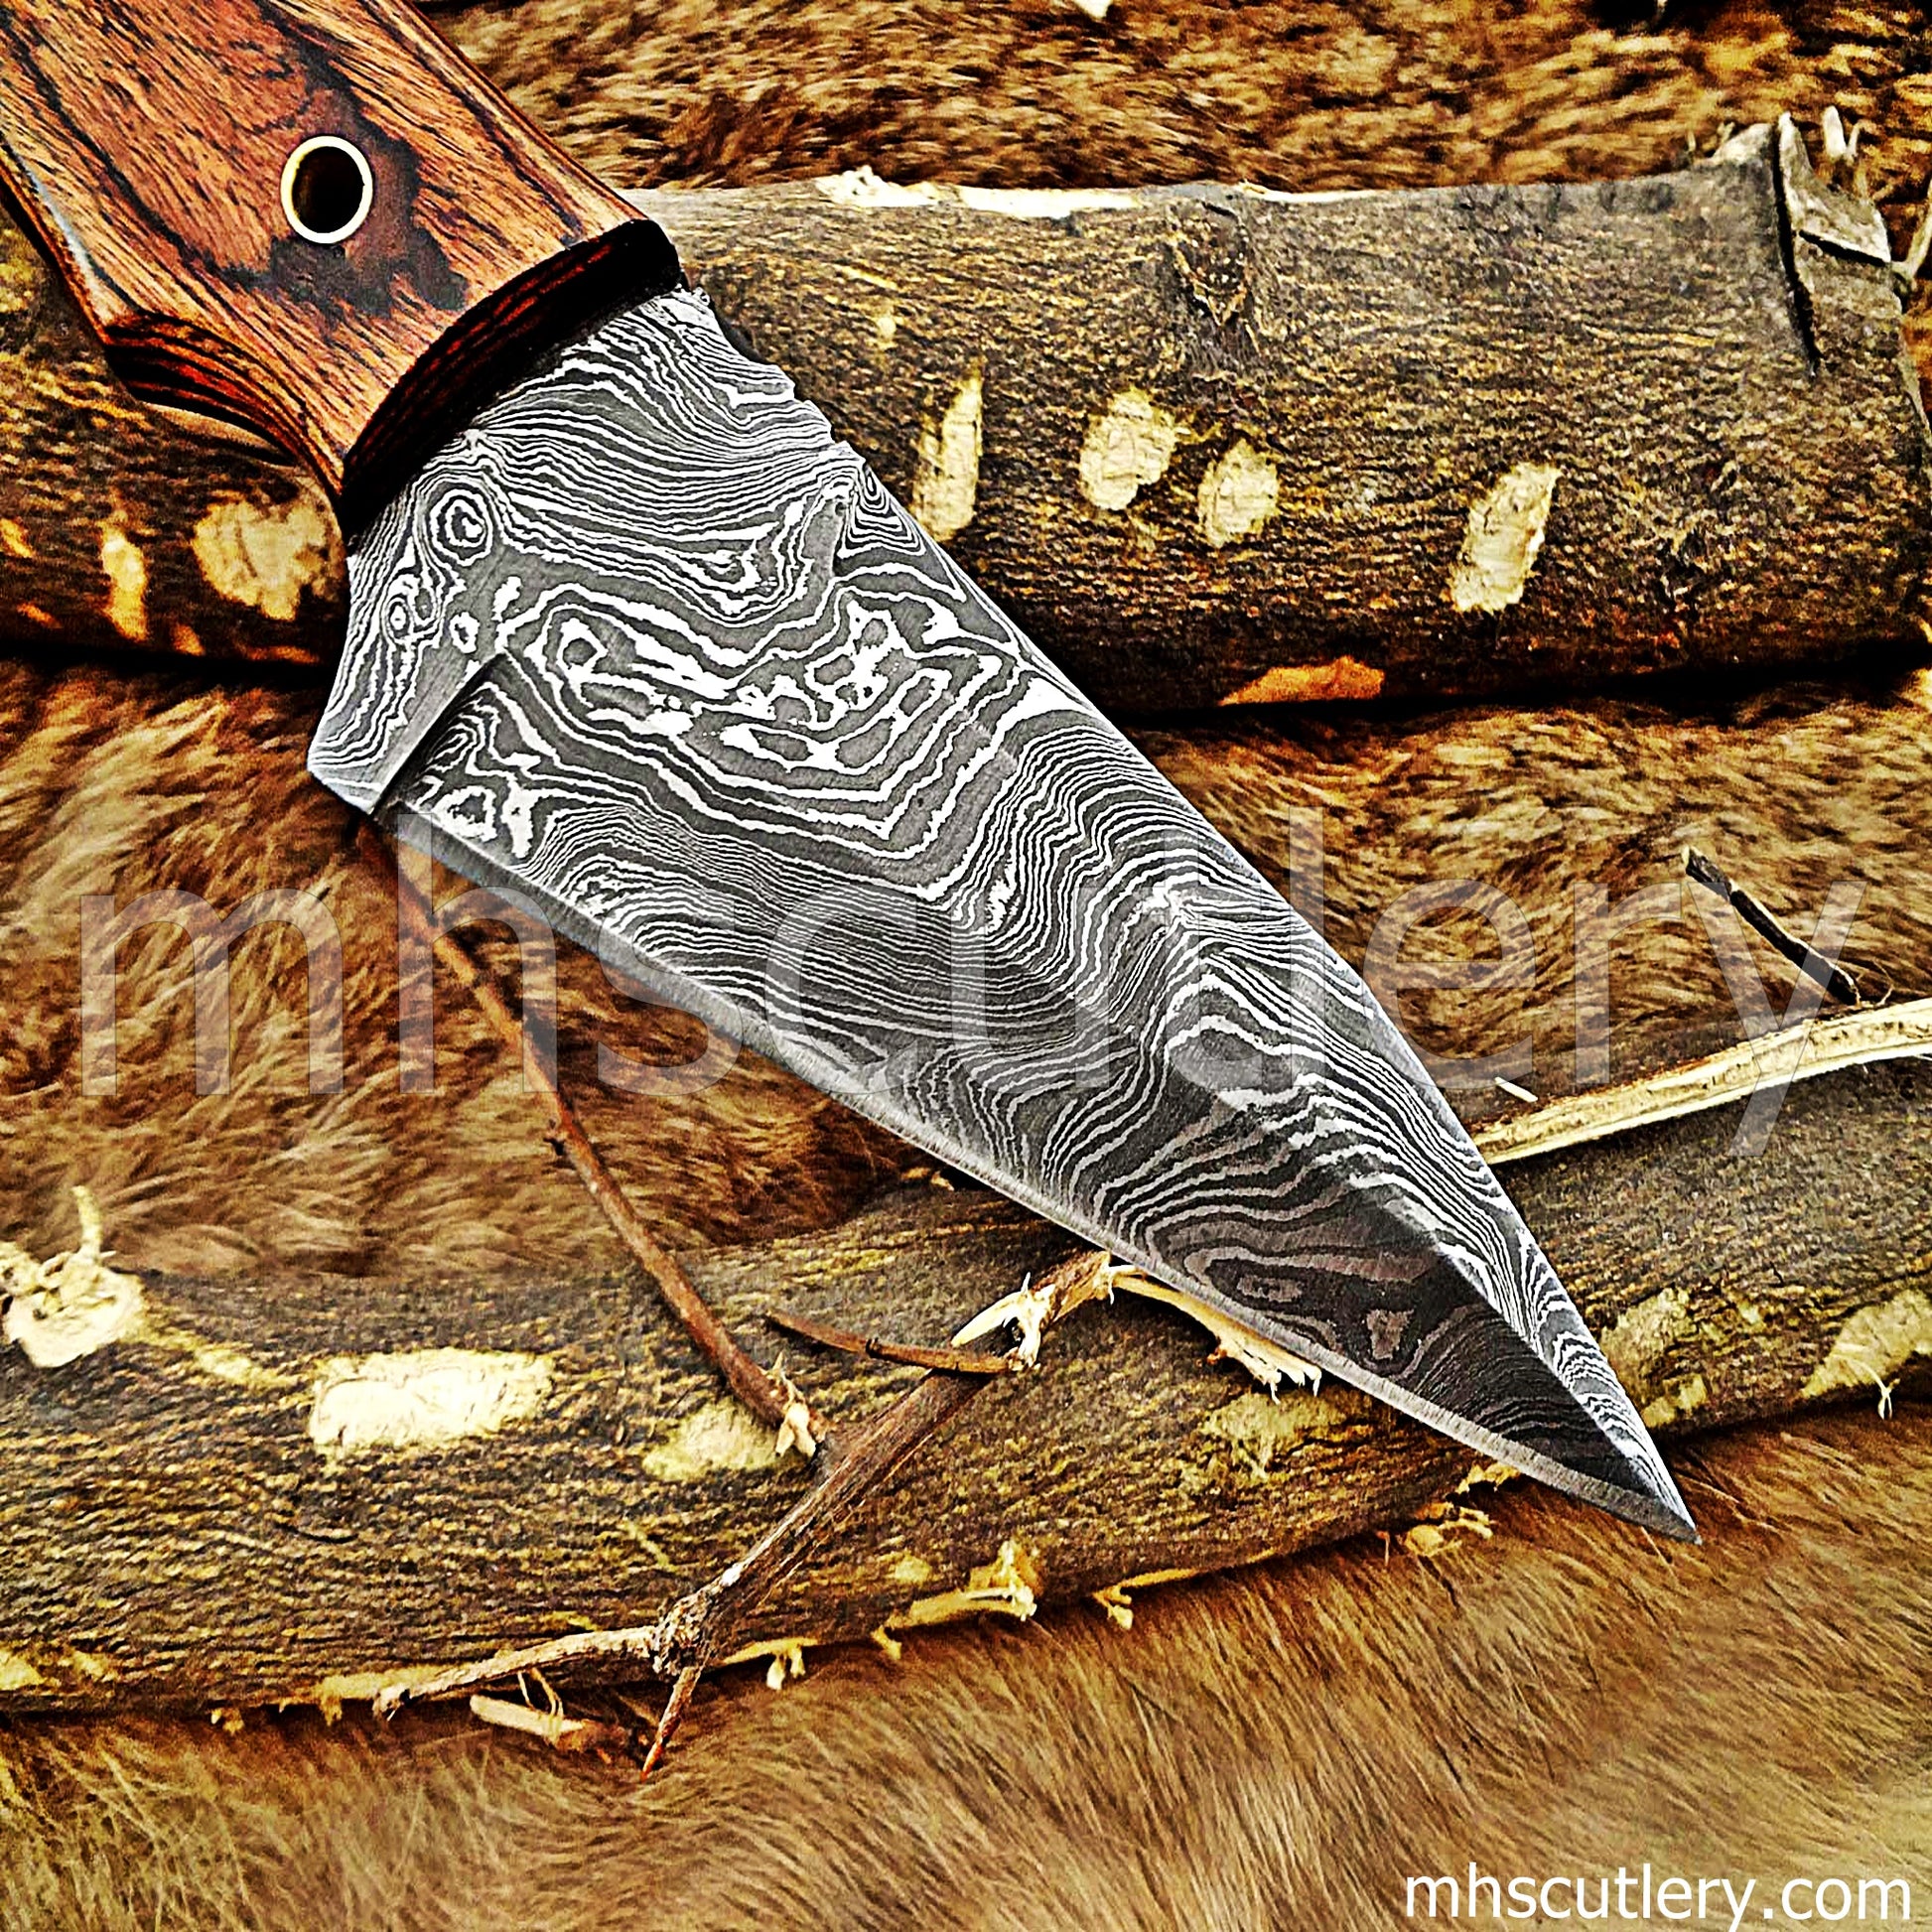 Damascus Steel Tactical Hunter Skinner Knife | mhscutlery